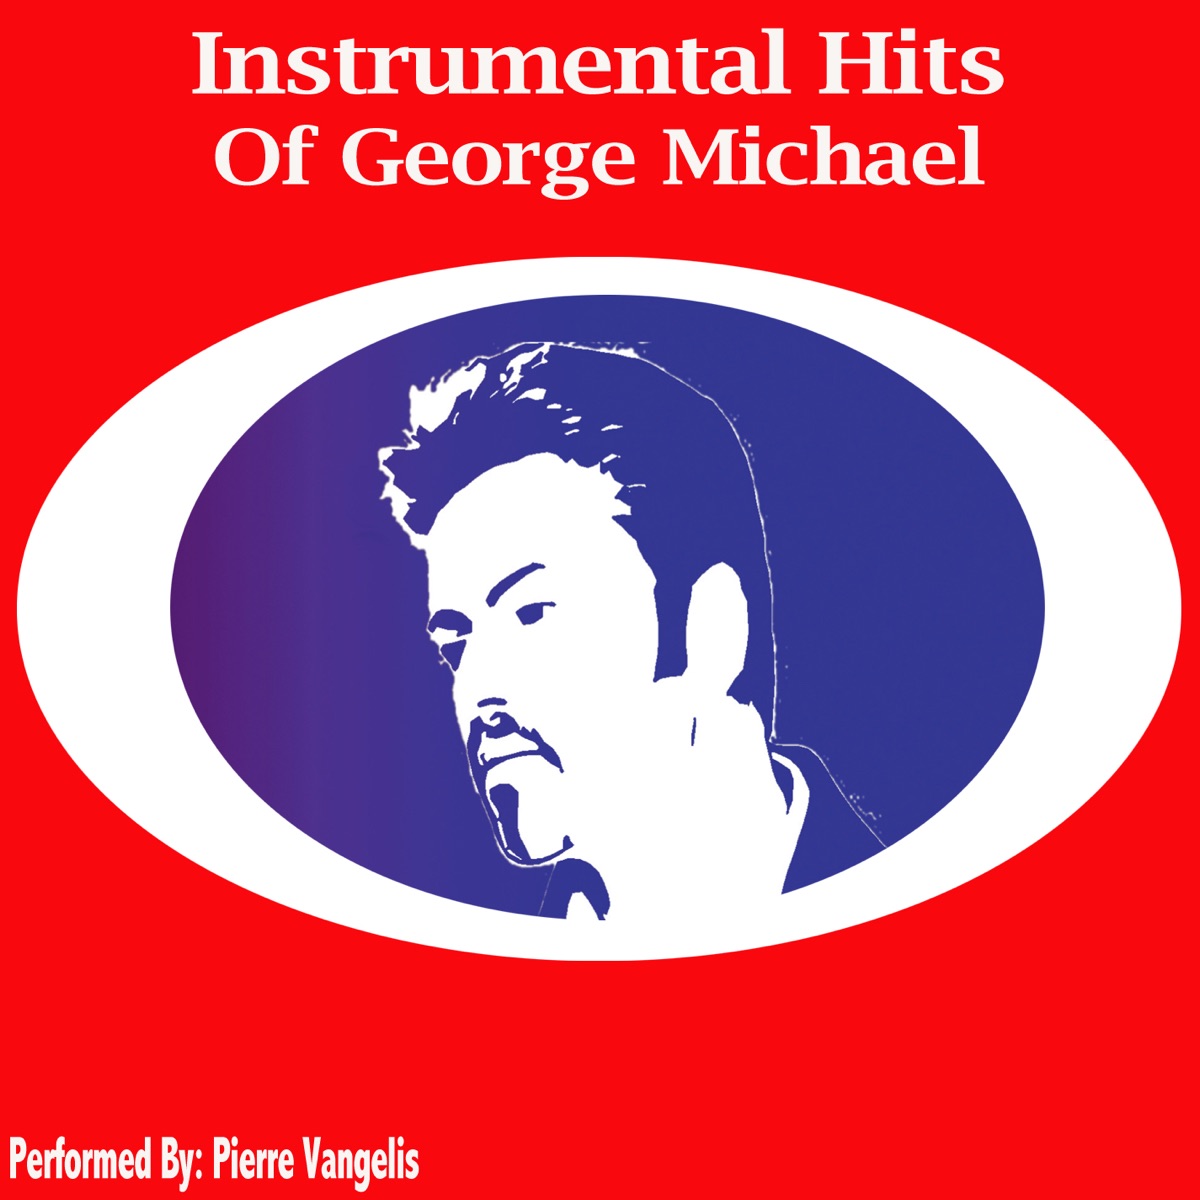 Instrumental Hits of George Michael by Pierre Vangelis on Apple Music